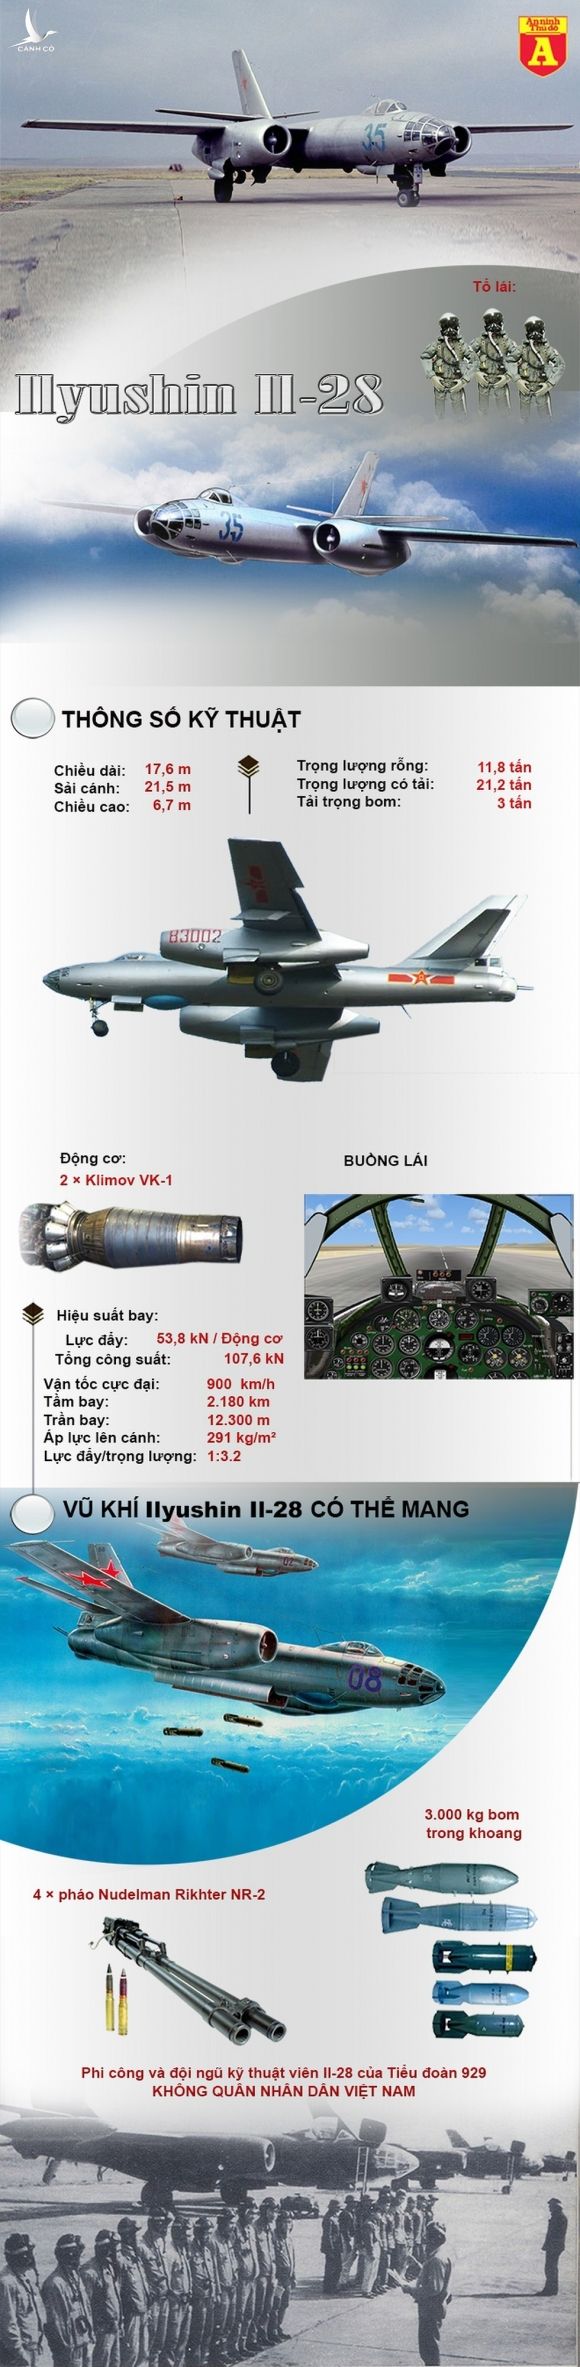 Bất ngờ với máy bay ném bom duy nhất của không quân Việt Nam